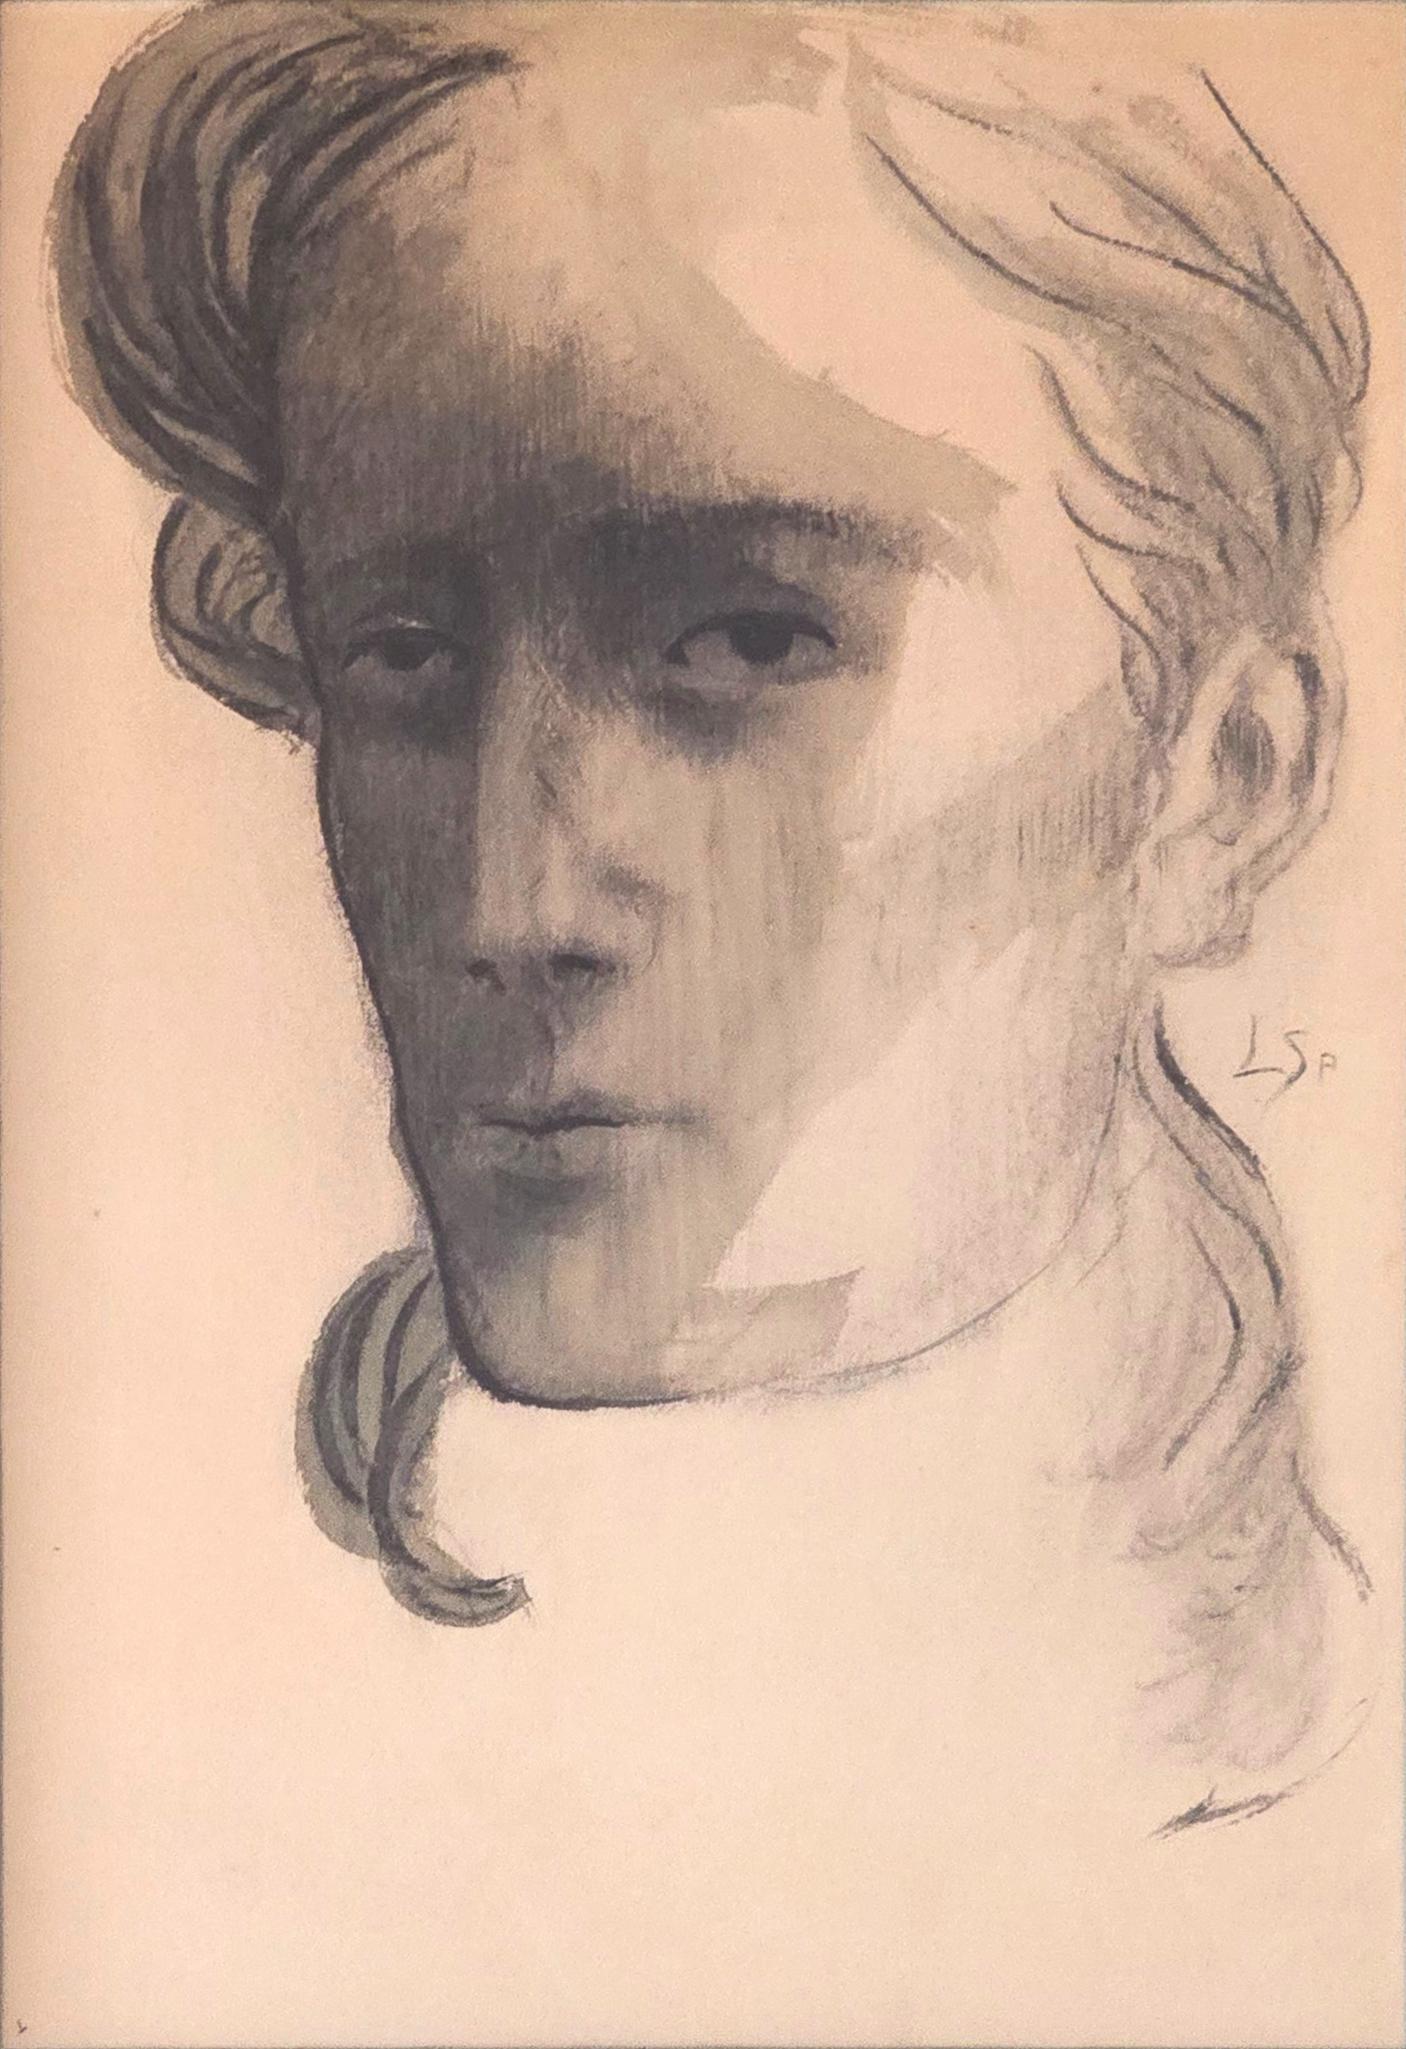 Léon Spilliaert (1881-1946)
Portrait d'un jeune homme - 1901.
Crayon, encre de Chine, pinceau, lavis, aquarelle (bleu-vert), crayon de couleur (bleu) sur papier. 311x196 mm 
Initiales à droite à mi-hauteur : LSP (encre de Chine, pinceau) 
Signature